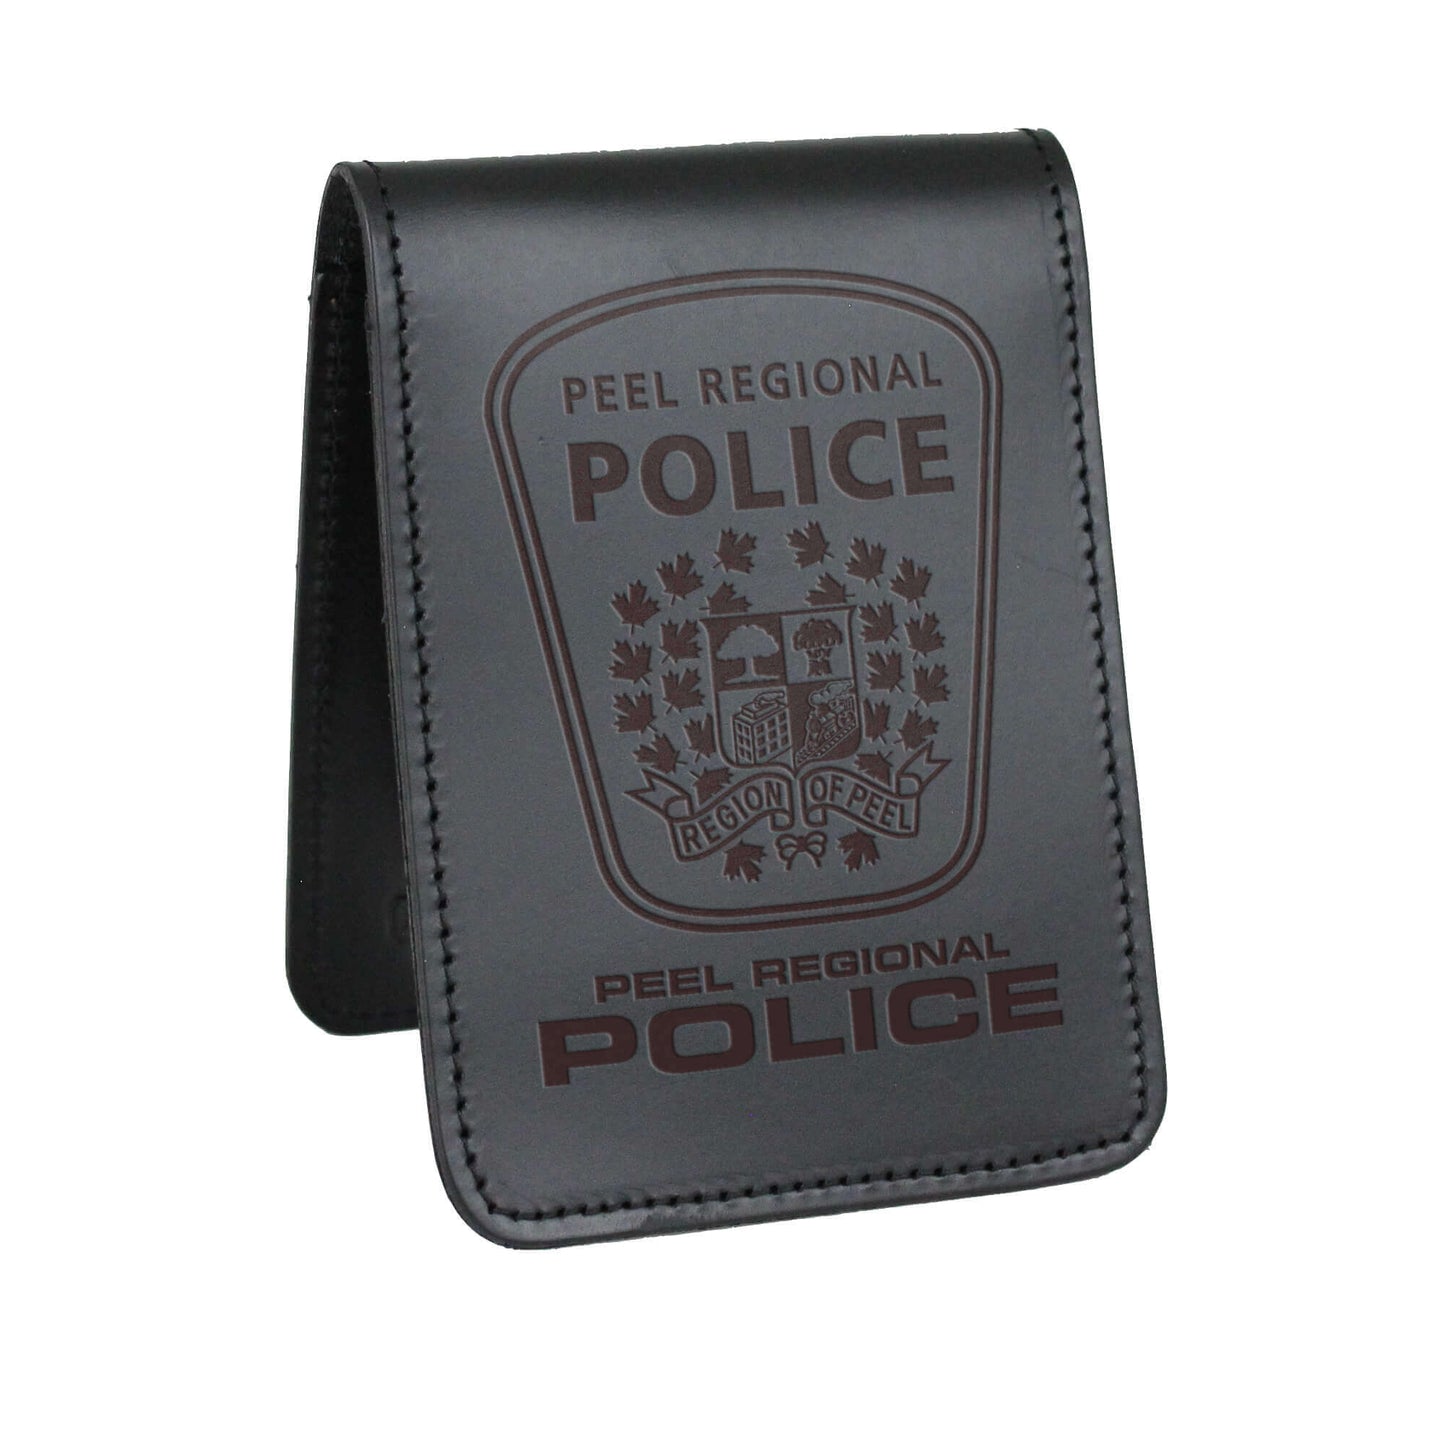 Peel Regional Police Notebook Cover